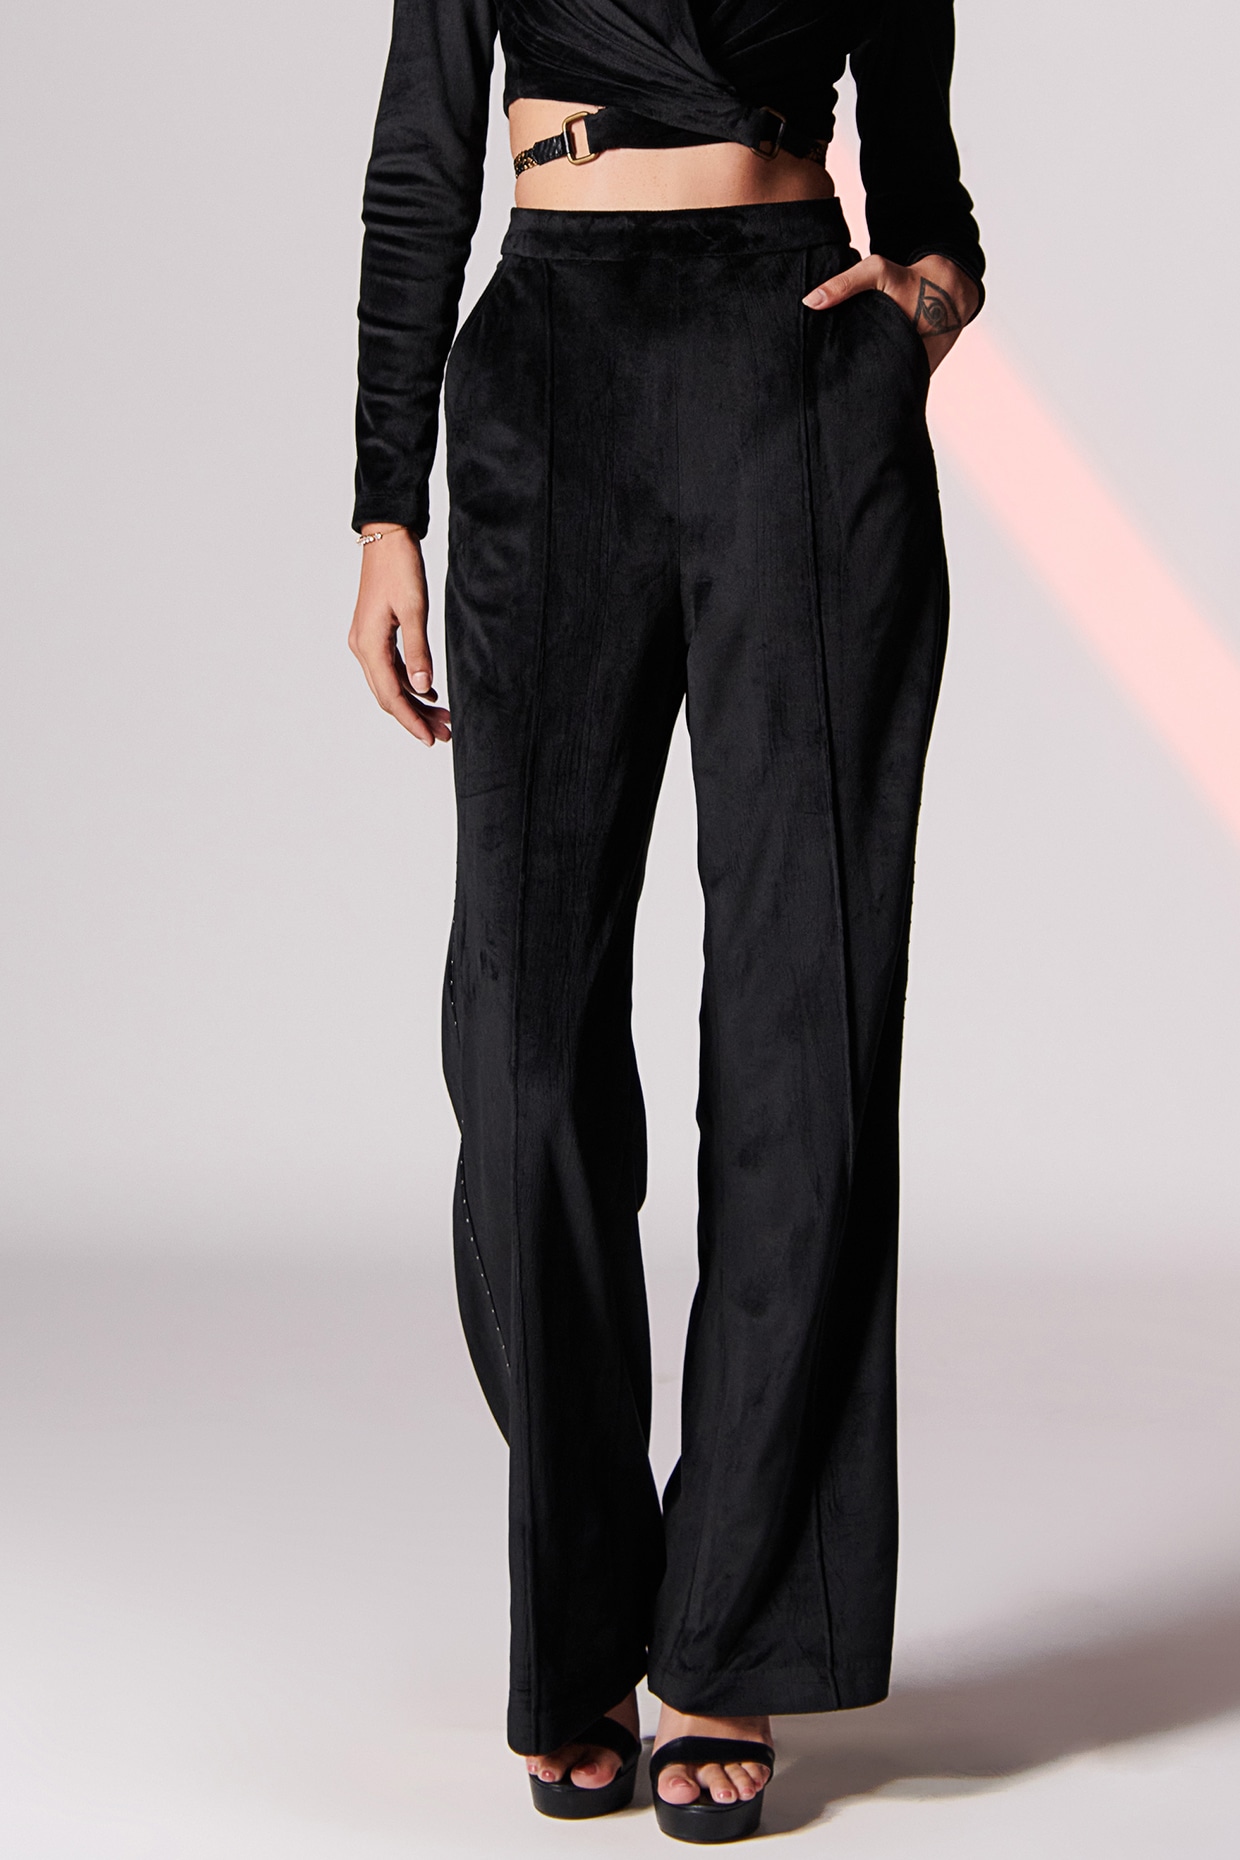 Buy Black Velvet Pants for Women Online from Indias Luxury Designers 2023